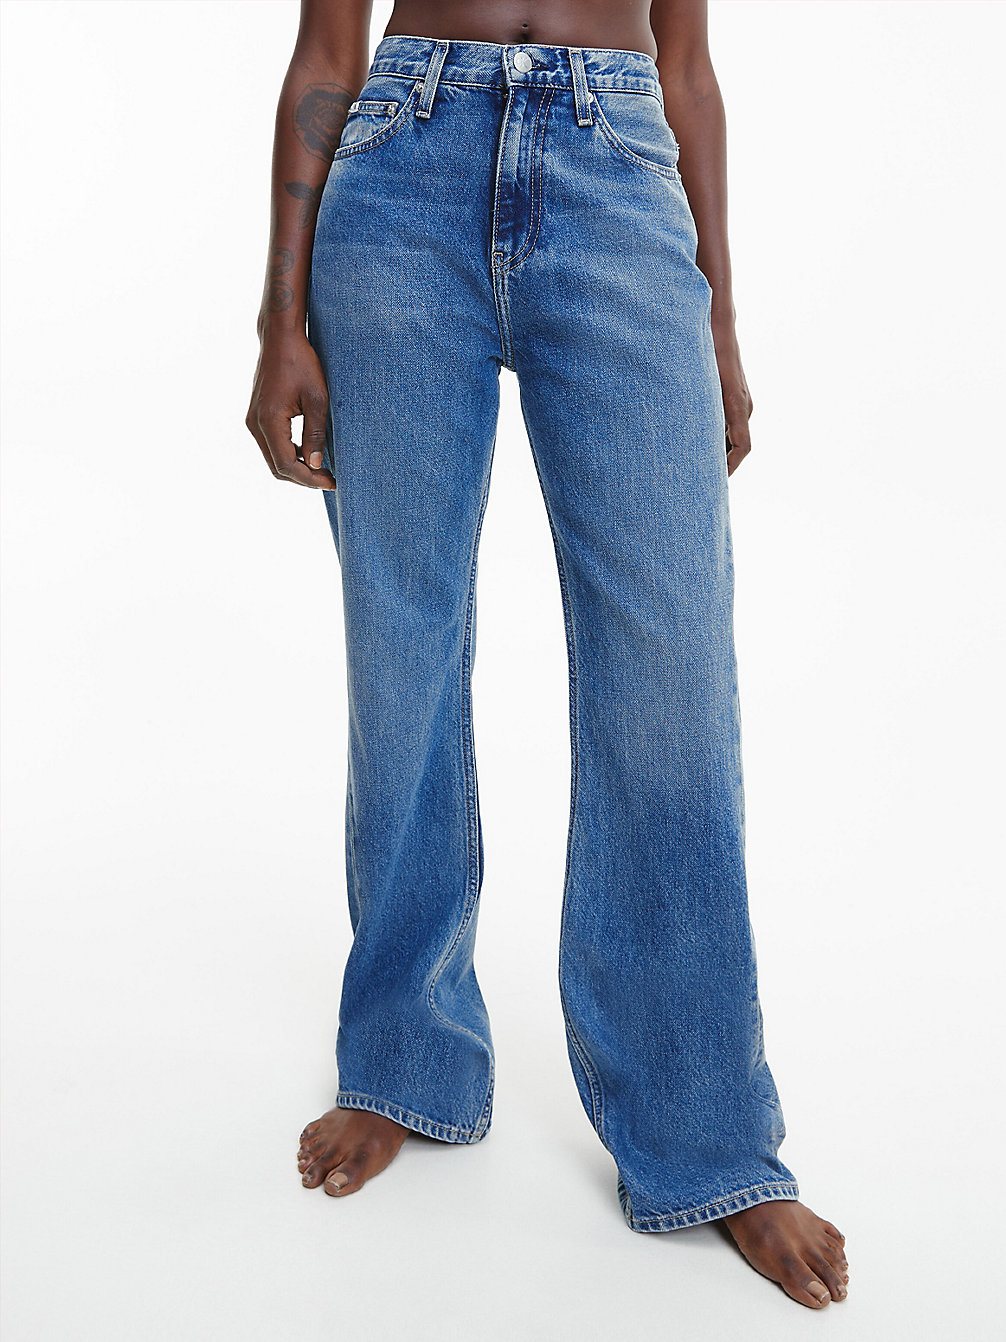 DENIM DARK Authentic Bootcut Jeans undefined women Calvin Klein